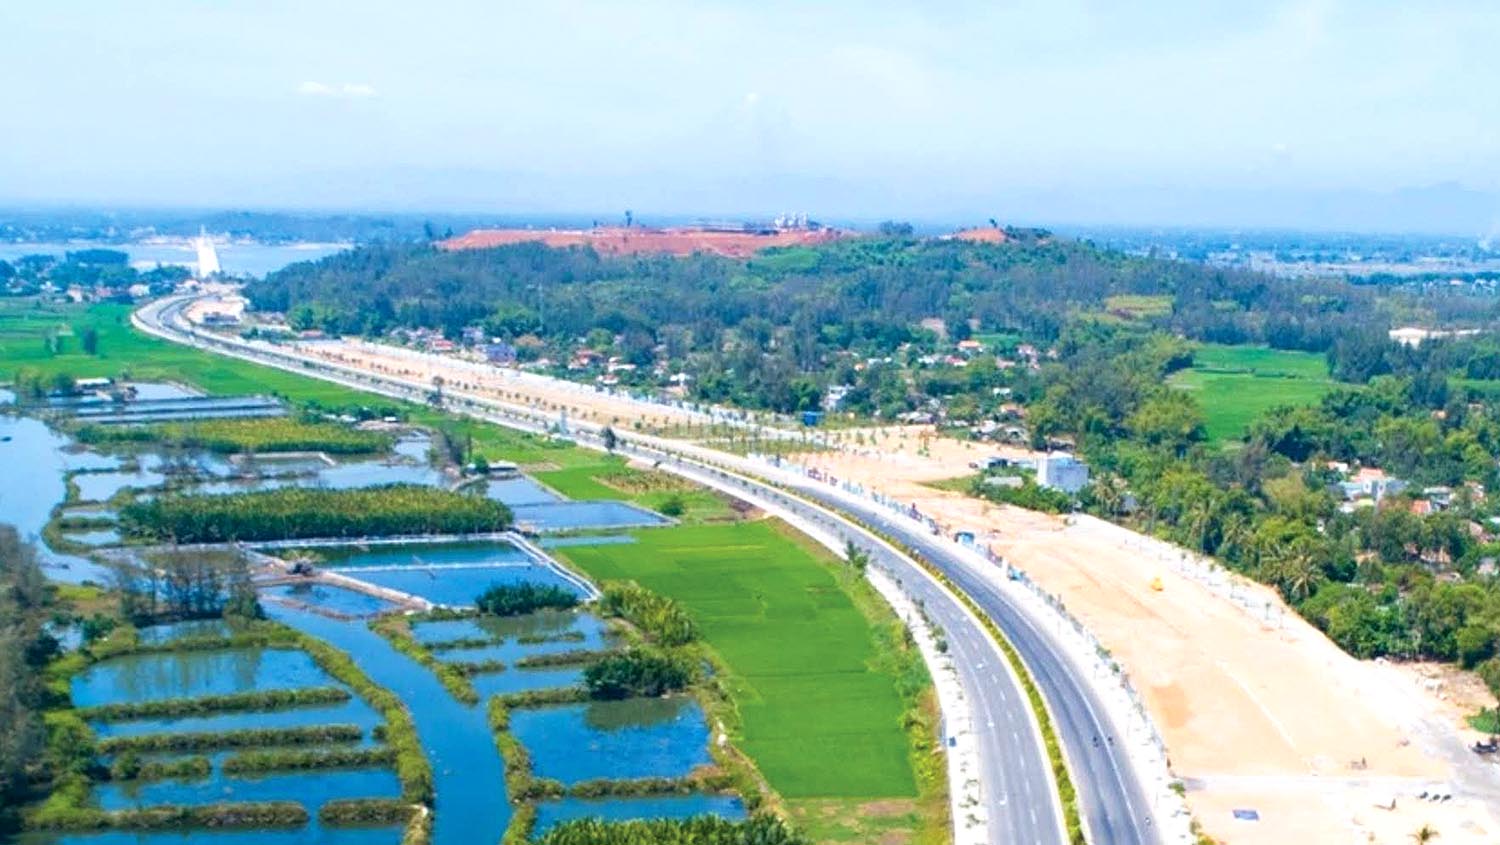 Đặc biệt, Dự án đường Hoàng Sa - Dốc Sỏi, với tổng kinh phí khoảng 3.500 tỷ đồng đi qua địa bàn các huyện Bình Sơn, Sơn Tịnh và TP. Quảng Ngãi, với chiều dài toàn tuyến khoảng 28,22 km, quy mô 8 làn xe.